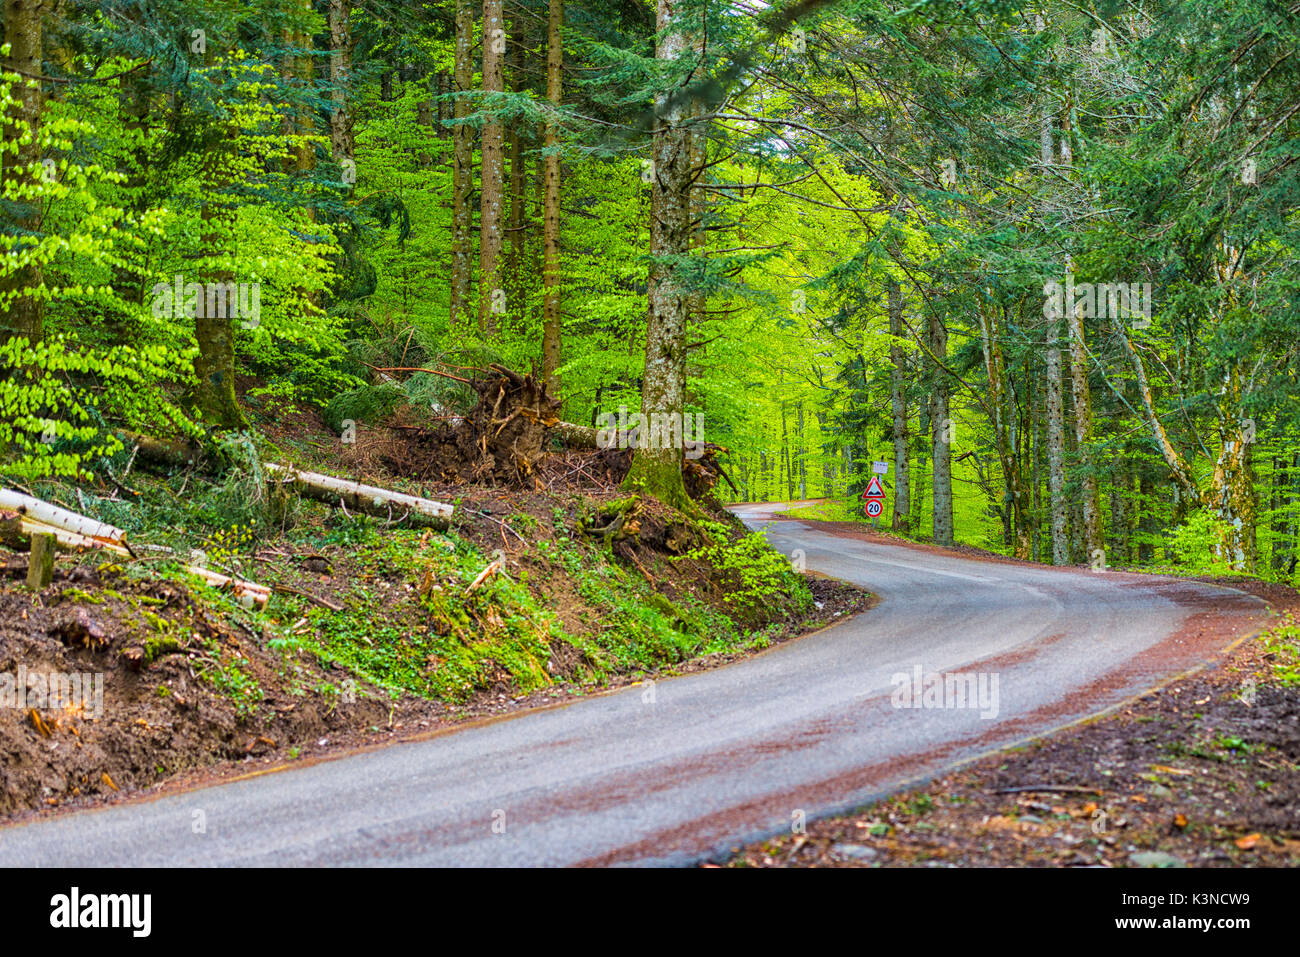 Carretera con curvas en el bosque, Foreste Casentinesi NP, distrito de Emilia Romagna, Italia Foto de stock